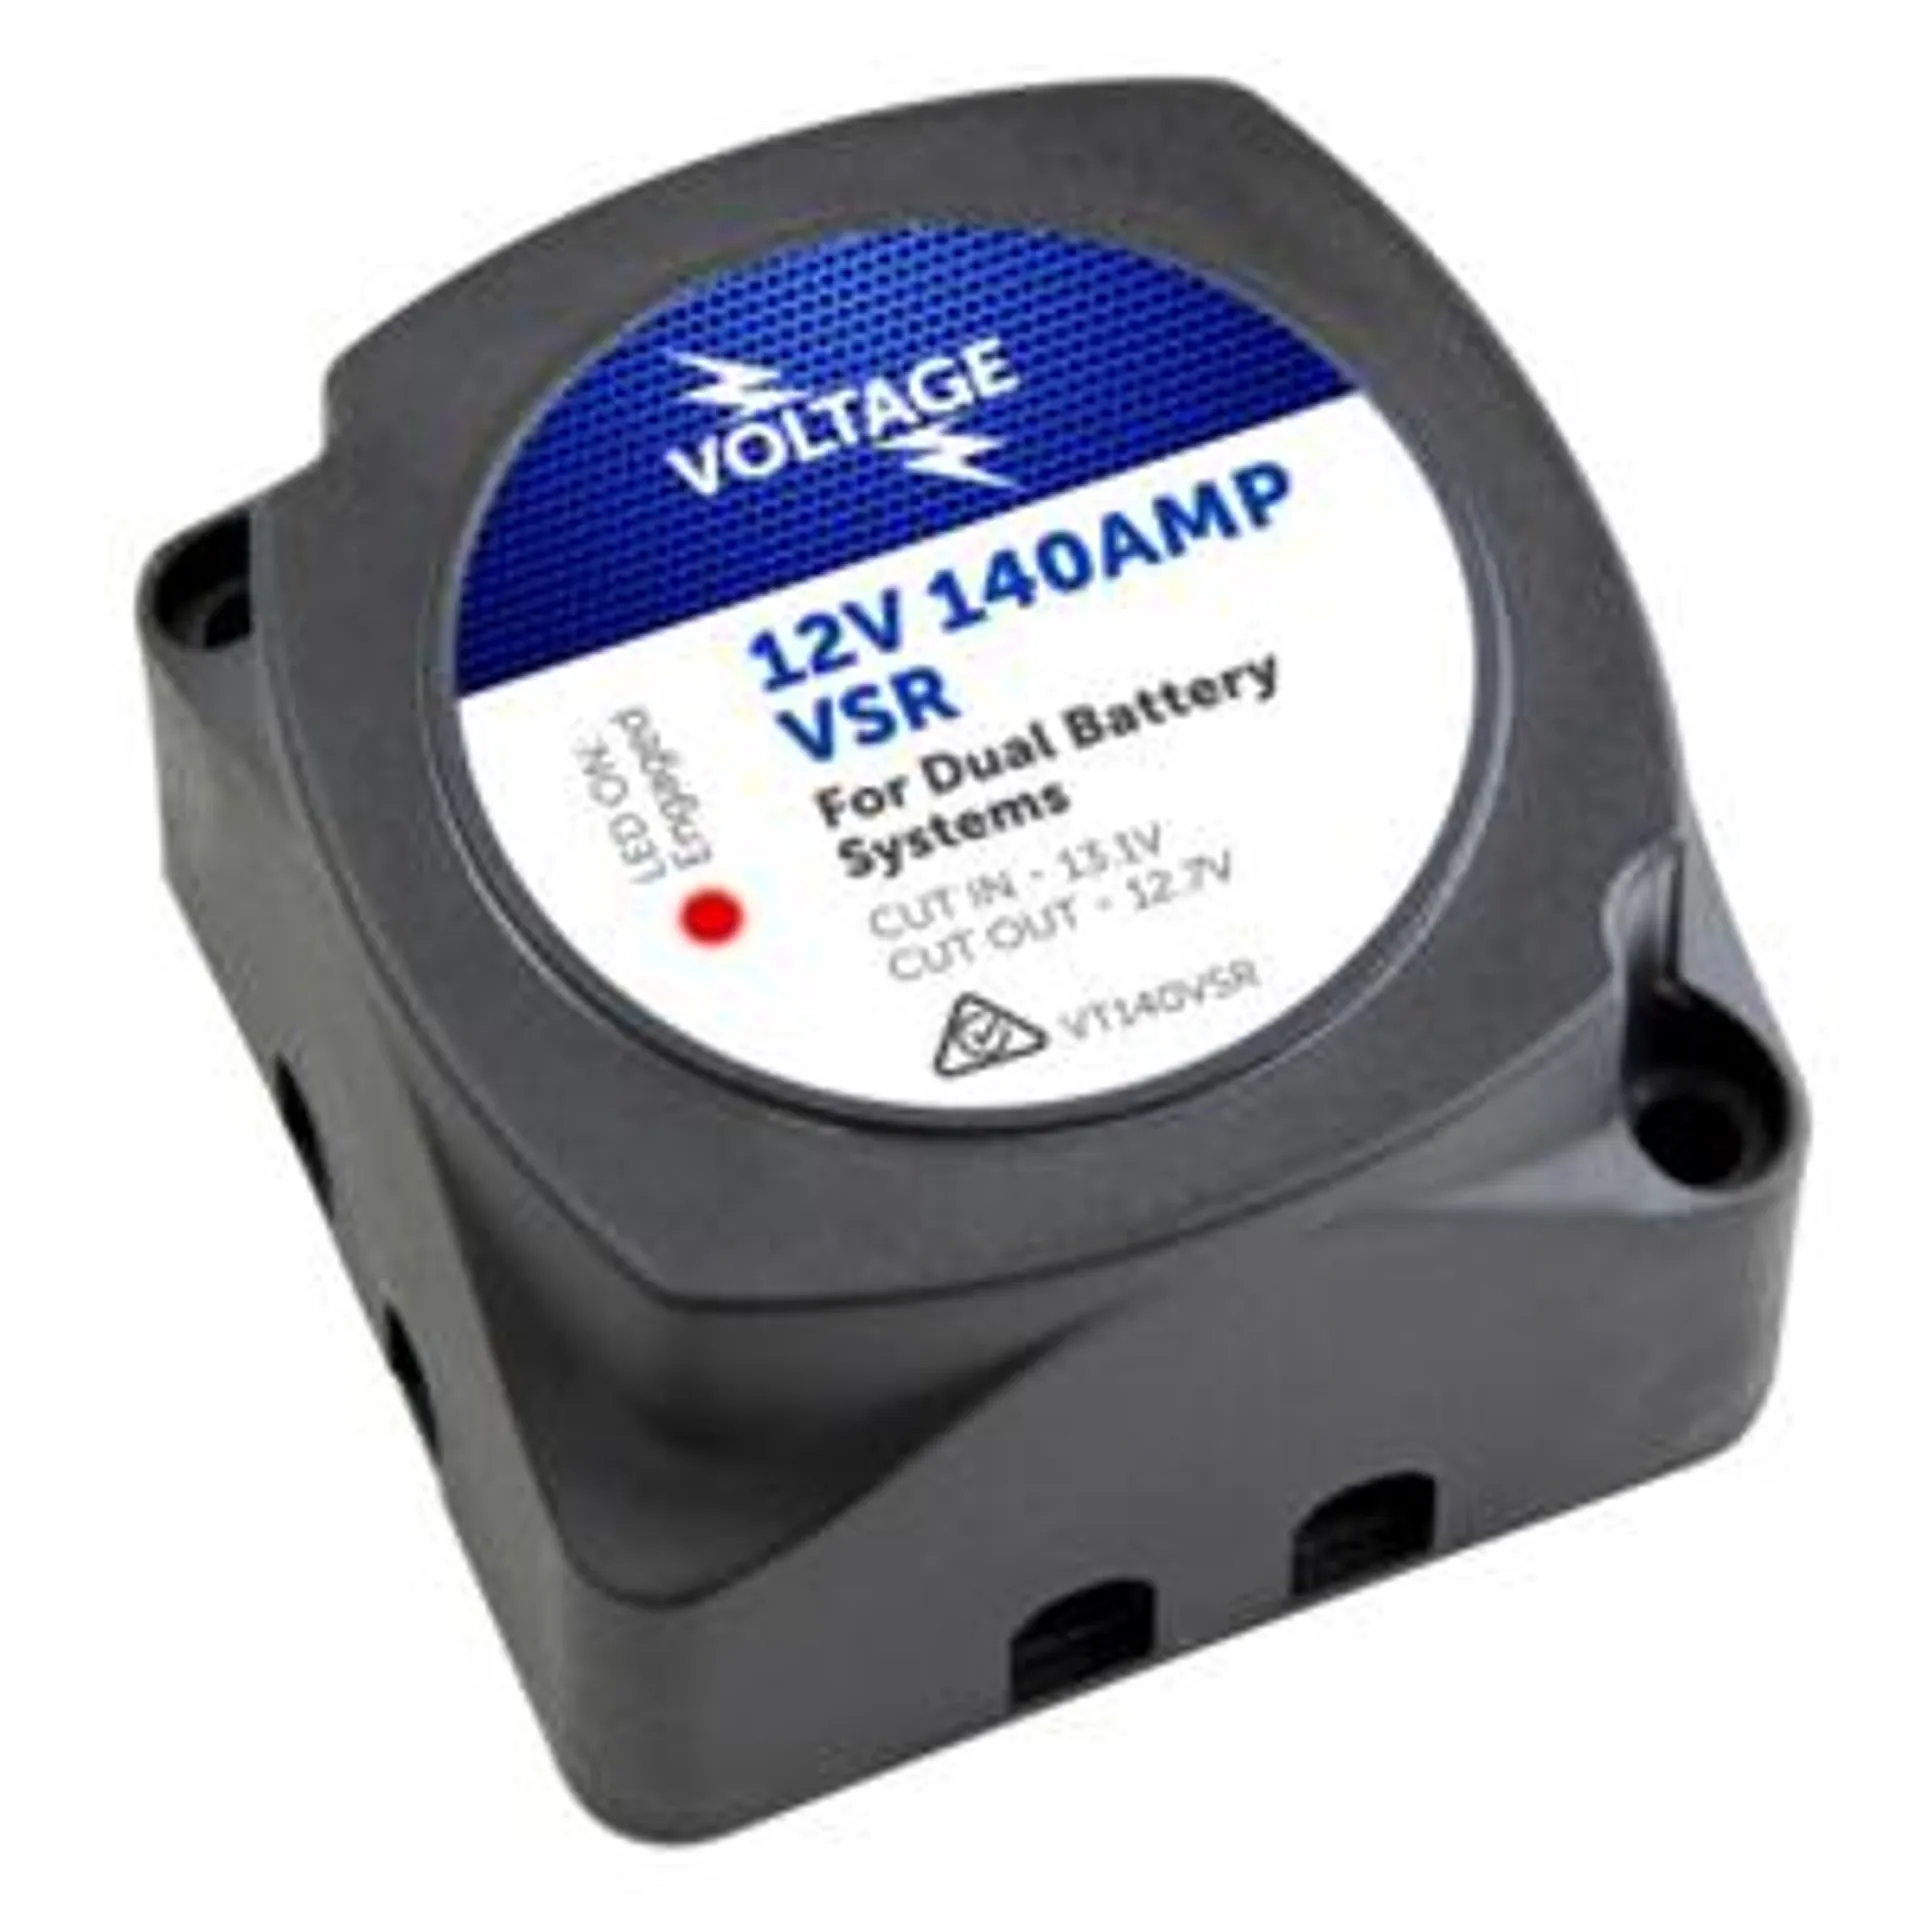 Voltage 12v 140amp Vsr Dual Battery Kit - VT140DBK